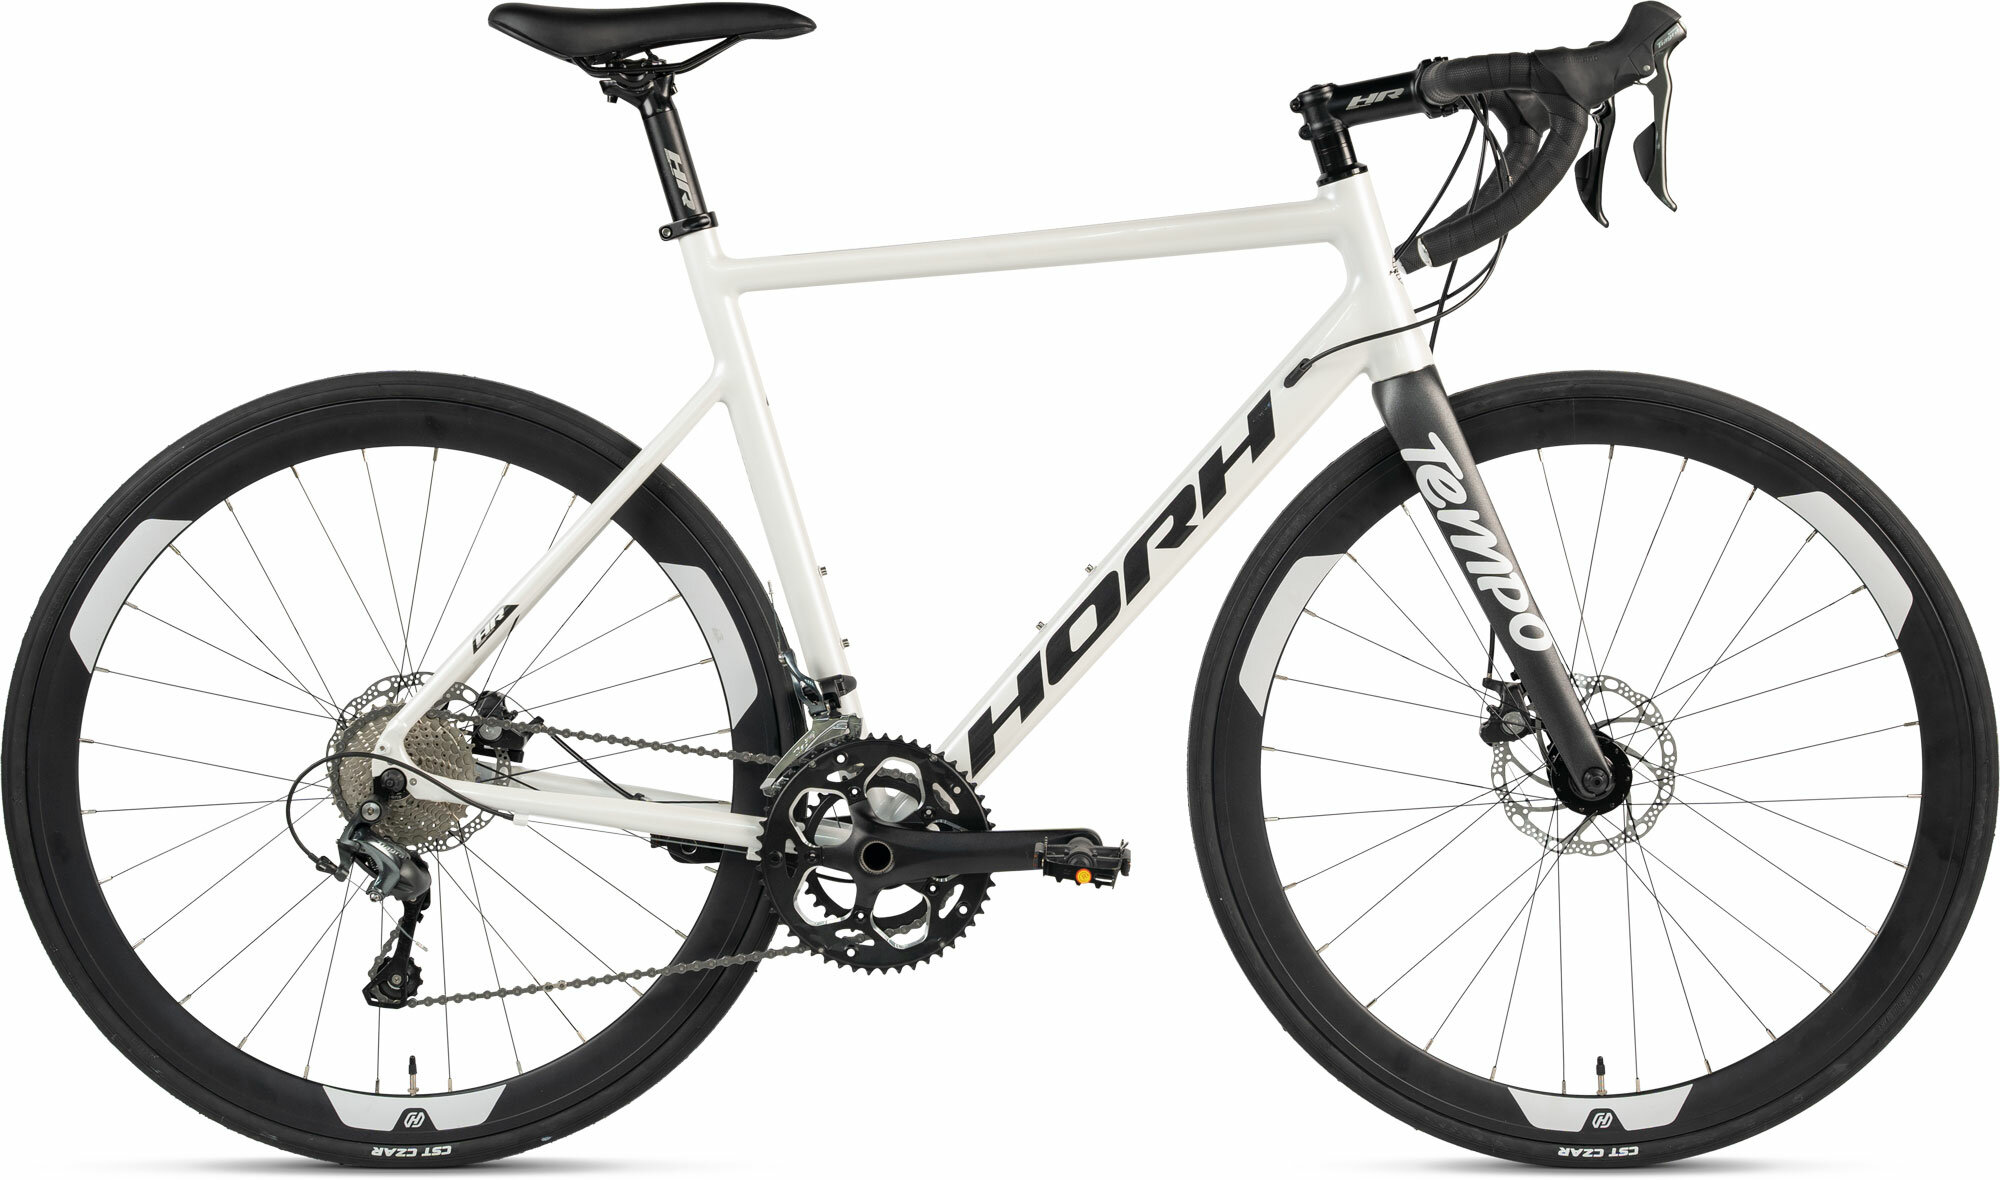 Велосипед Horh Tempo (2024), ригид, взрослый, мужской, алюминиевая рама, 20 скоростей, дисковые механические тормоза, цвет White-Black, белый/черный цвет, размер рамы 58 см, для роста 185-190 см